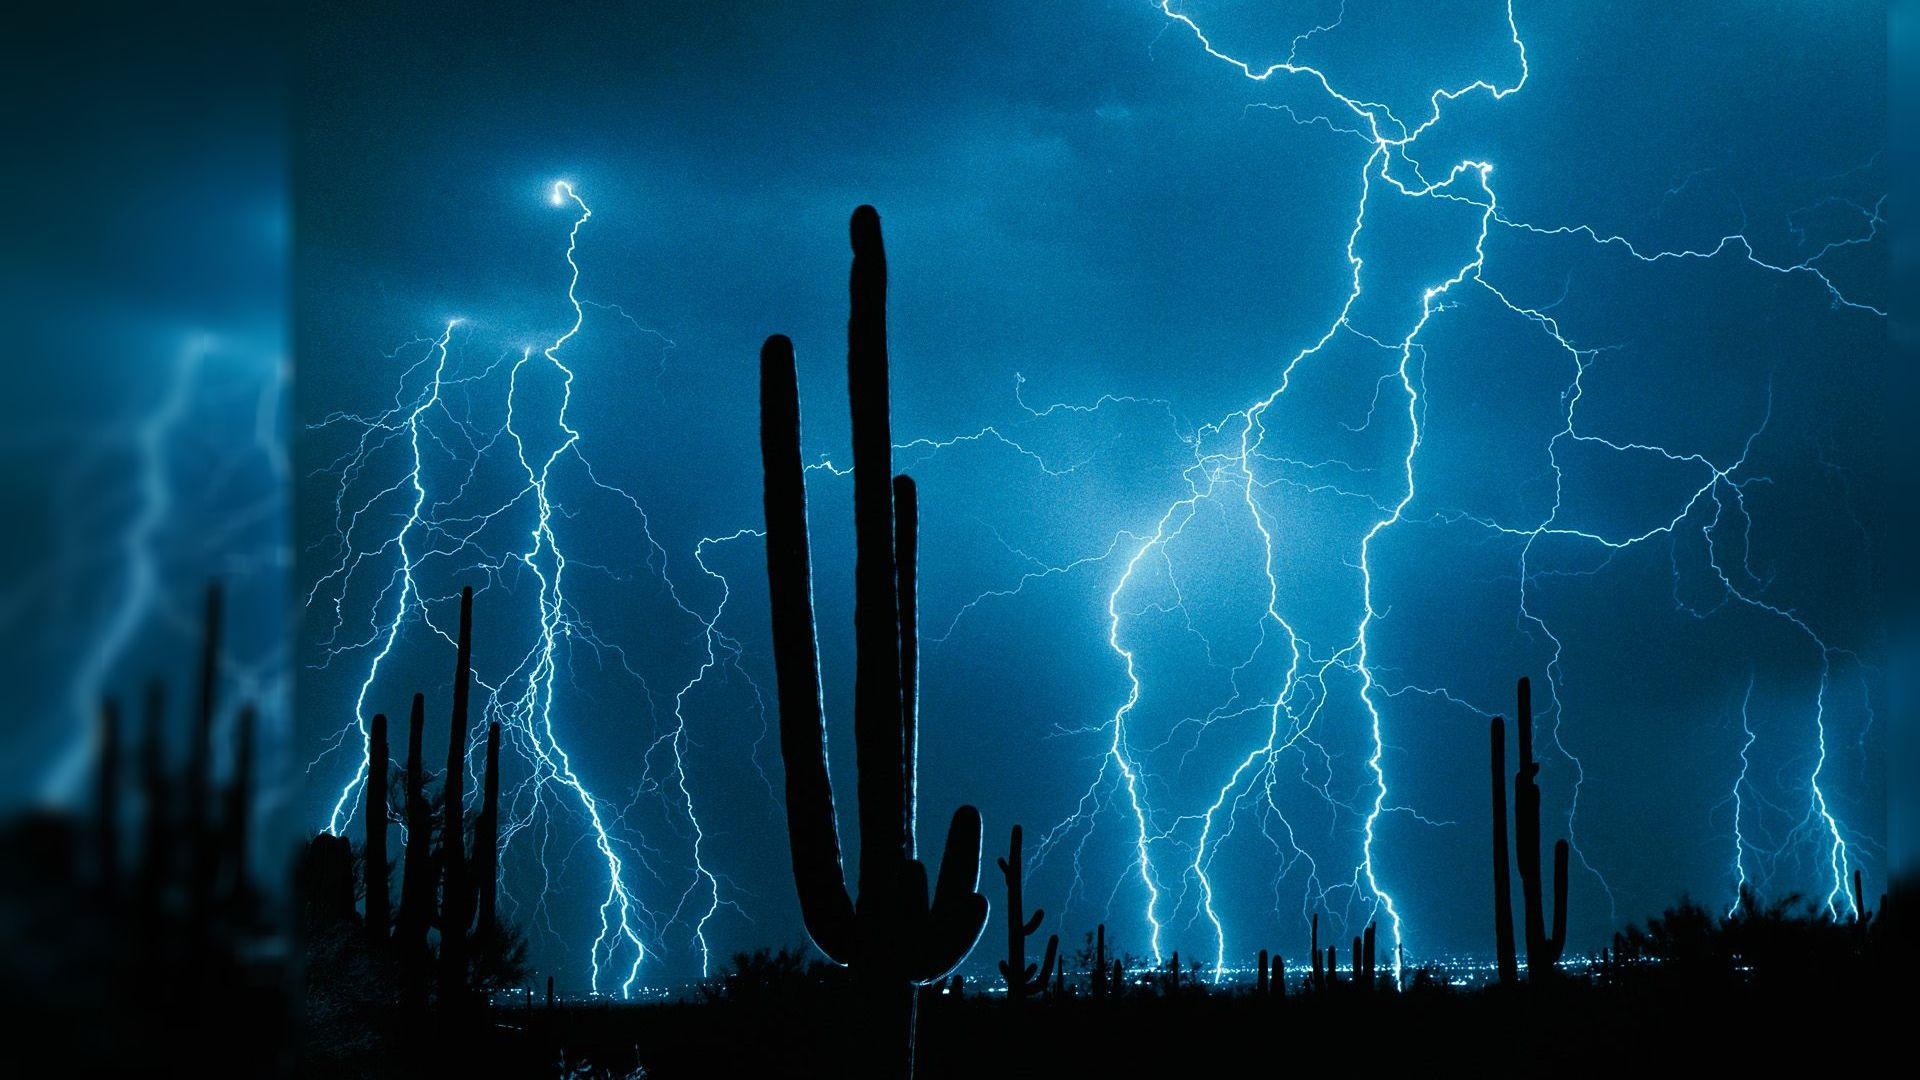 lightening storm over the desert Live Wallpaper In 4K Full HD